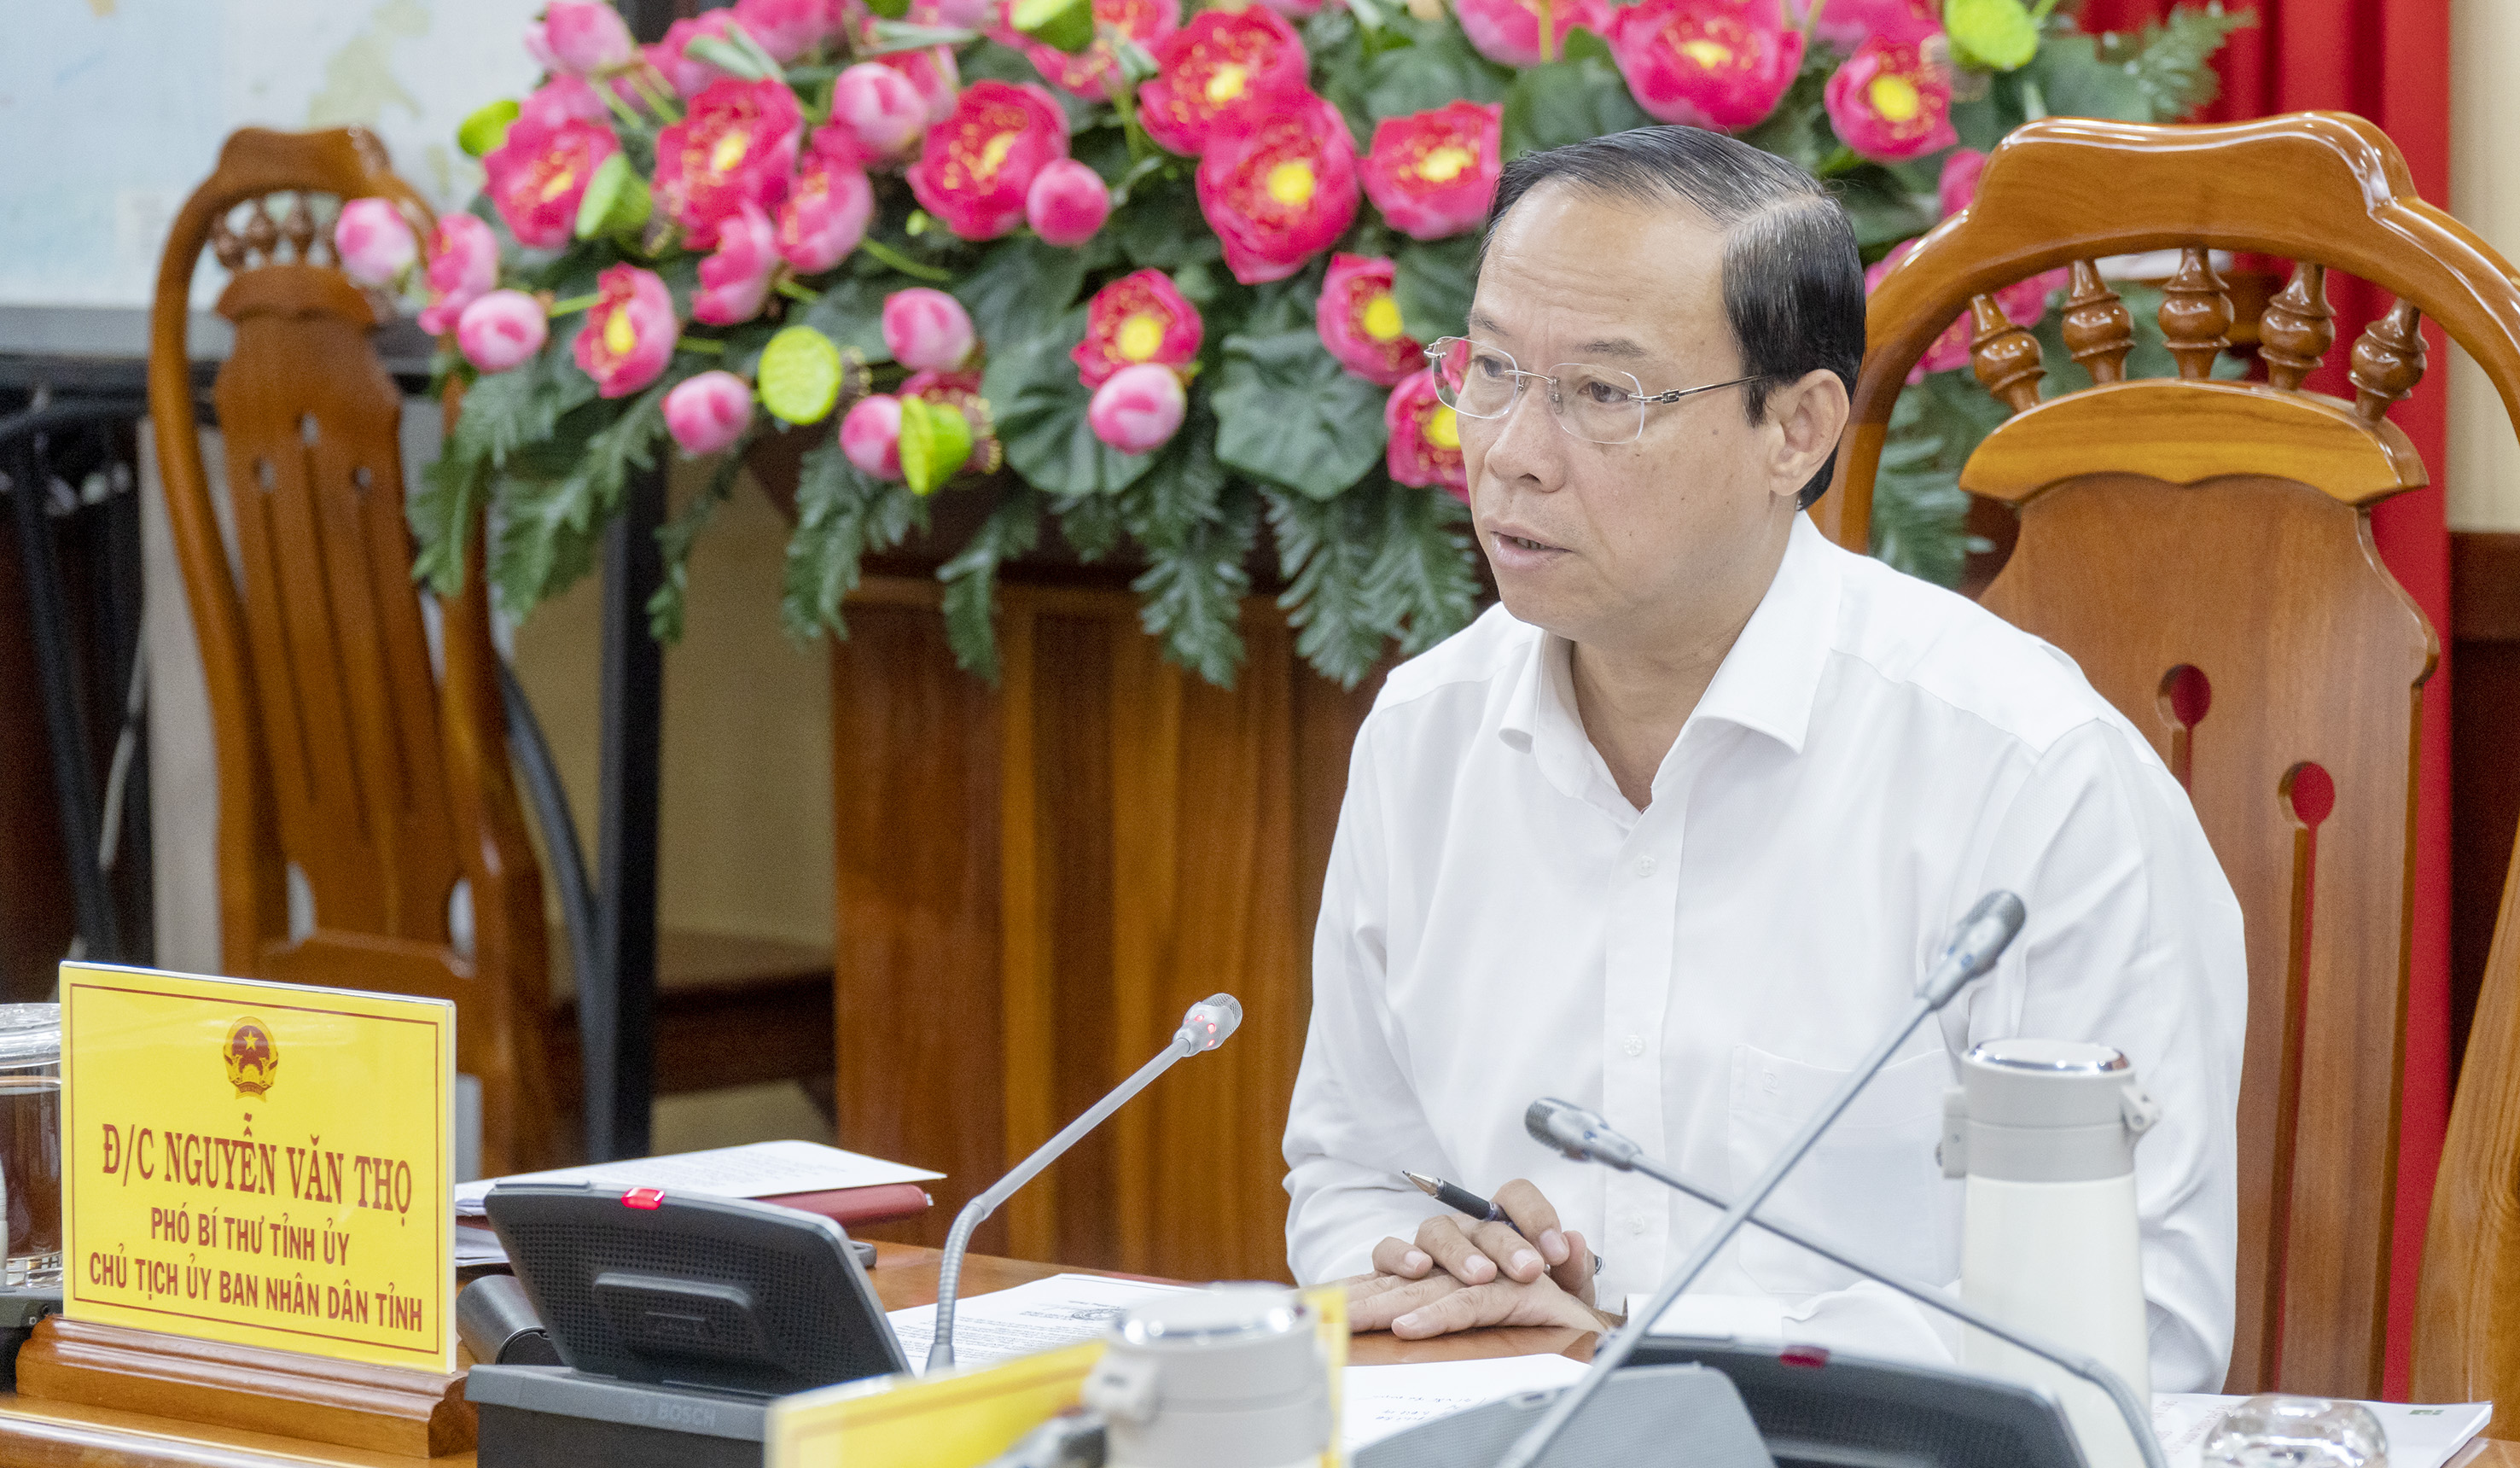 Ông Nguyễn Văn Thọ, Chủ tịch UBND tỉnh phát biểu kết luận buổi làm việc.